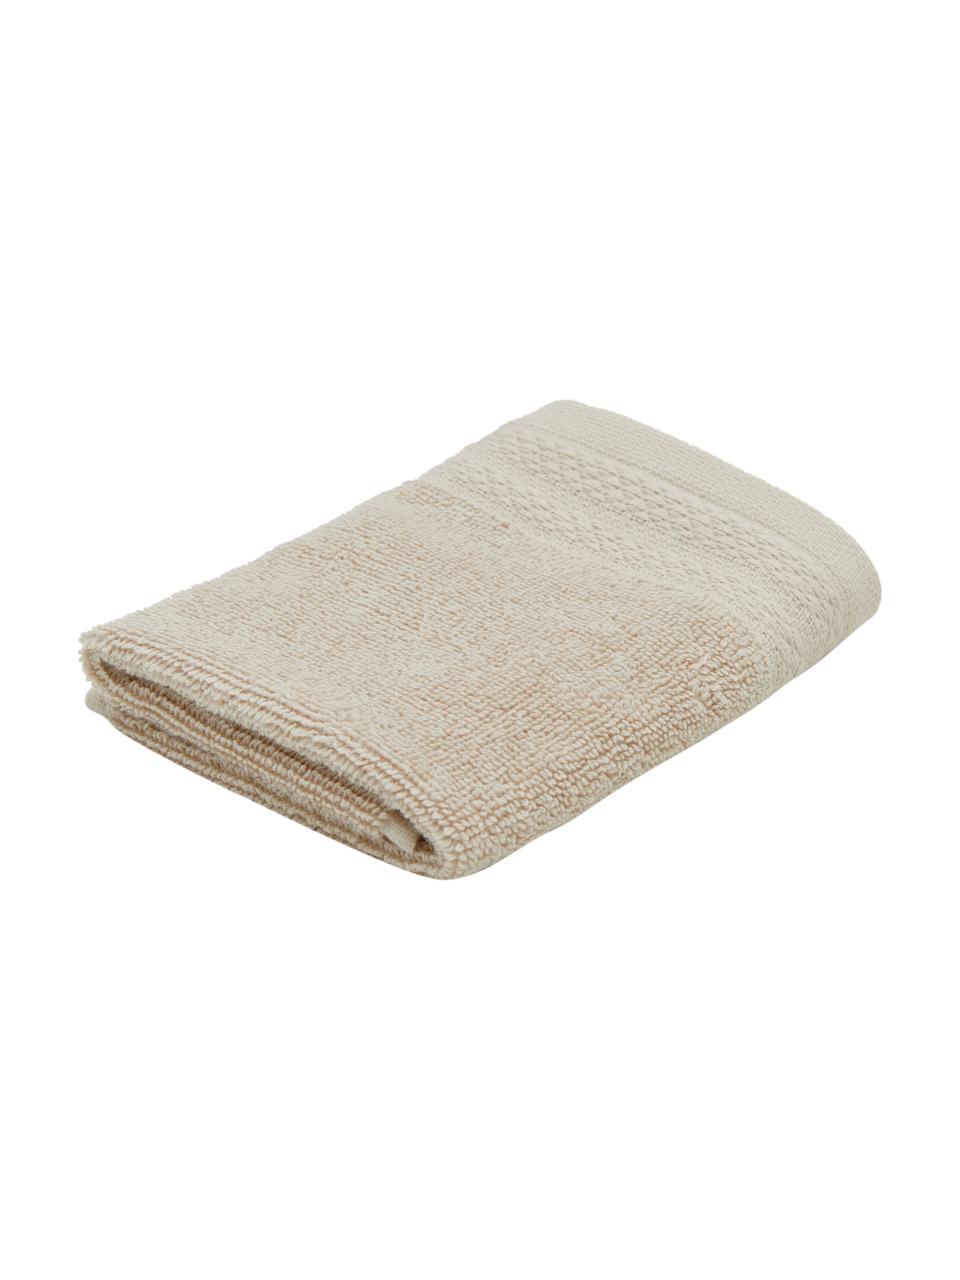 Handdoek Premium van biokatoen in verschillende formaten, 100% biokatoen, GOTS-gecertificeerd (van GCL International, GCL-300517)
Zware kwaliteit, 600 g/m², Beige, Handdoek, B 50 x L 100 cm